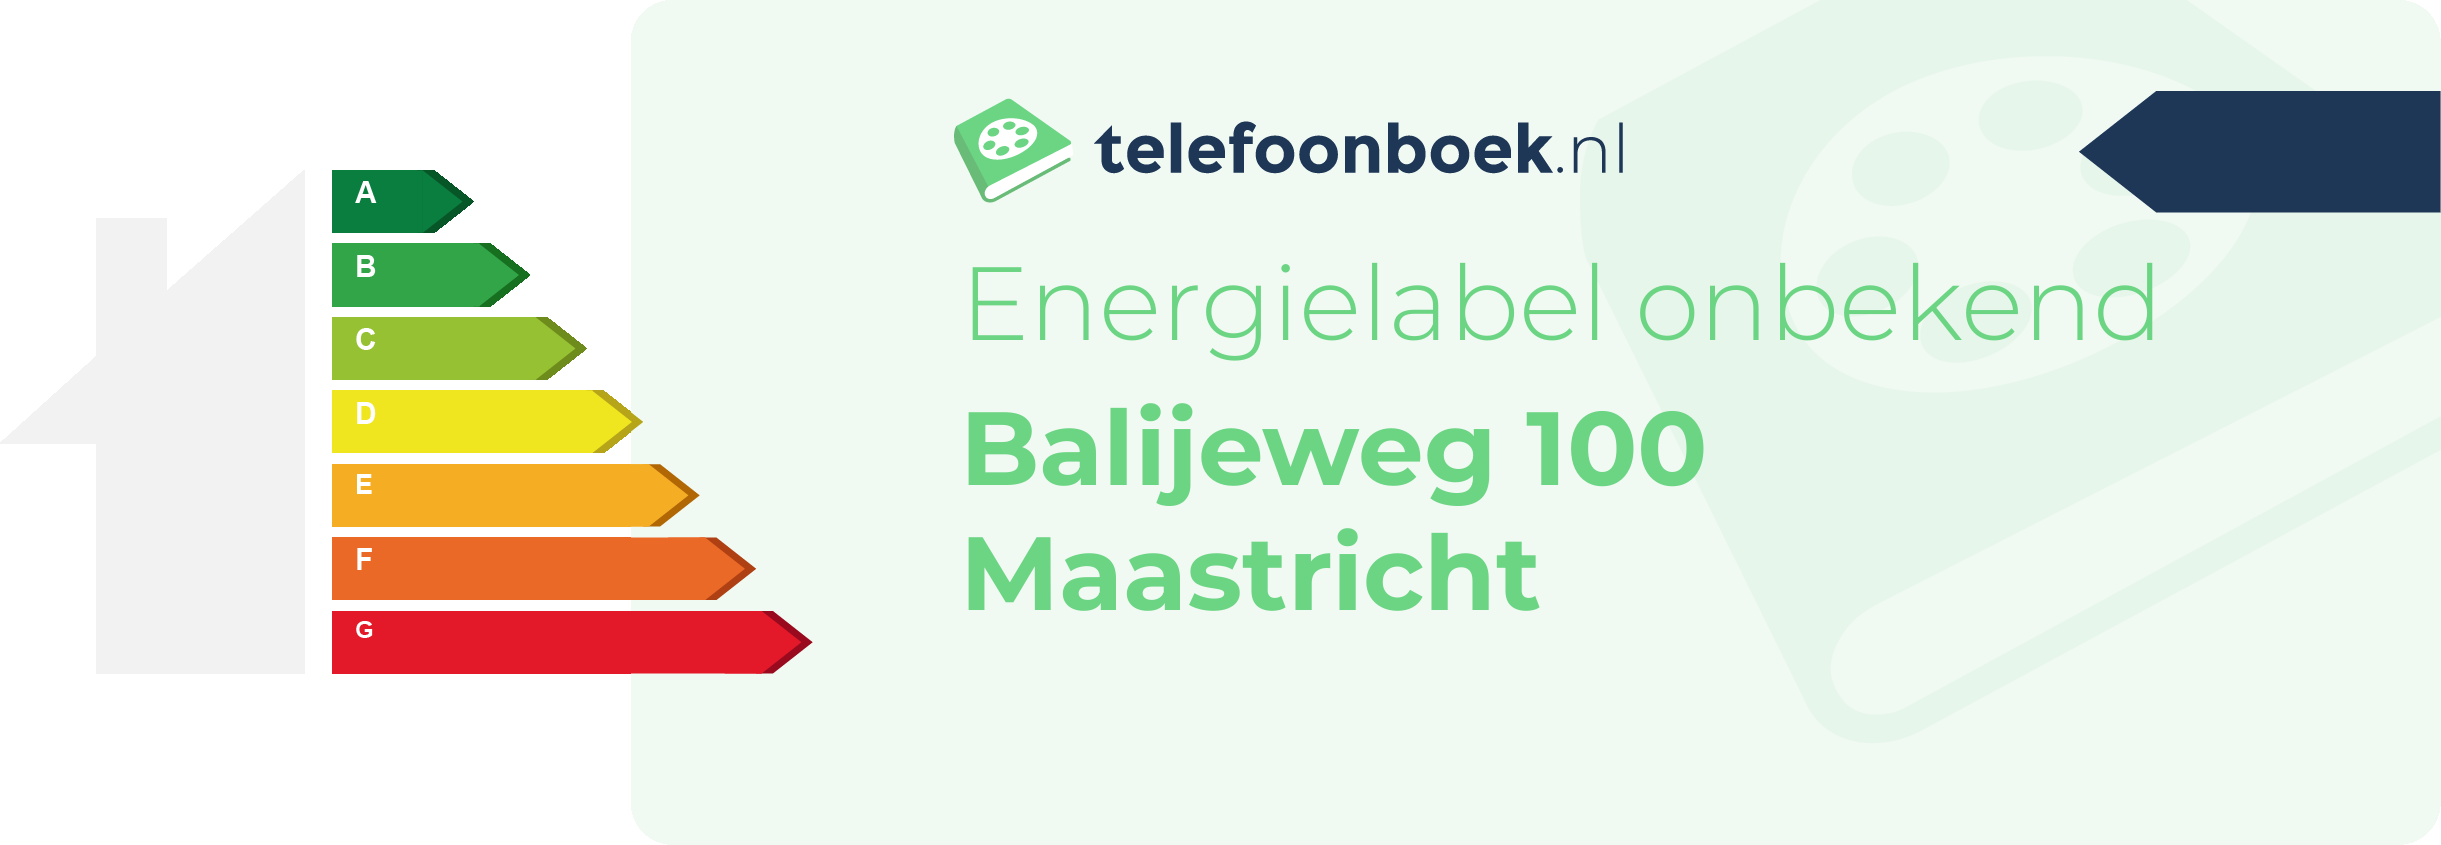 Energielabel Balijeweg 100 Maastricht